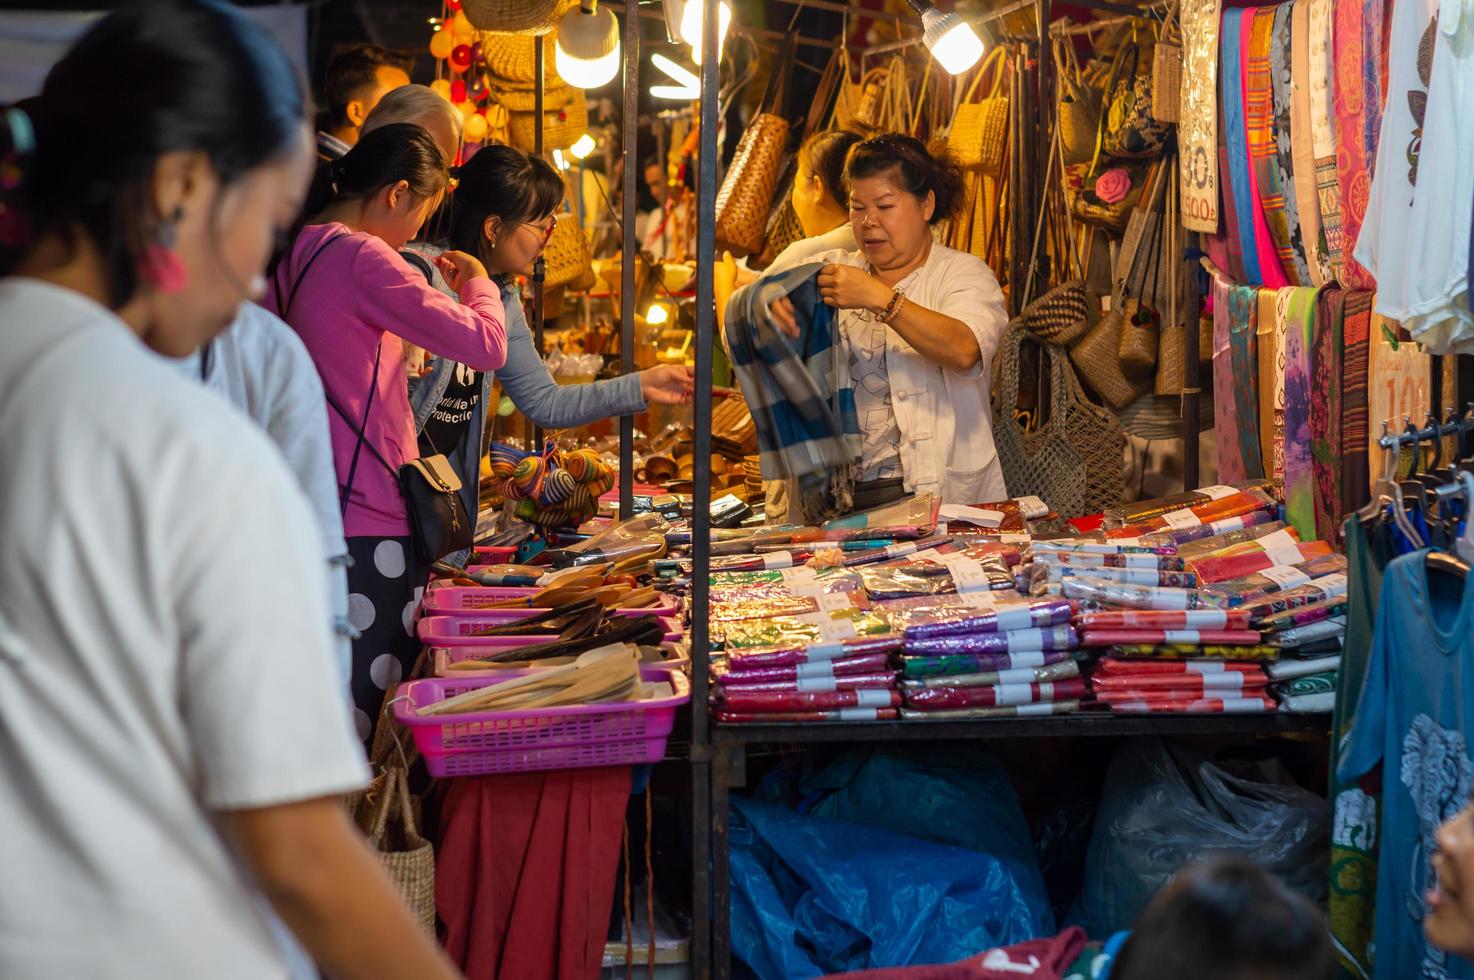 chiang mai wandelstraat chiang mai thailand 12 januari 2020een lokale ambachtelijke markt gemaakt van zijdekeramiek metaalglashout of kunst en eten Thaise toeristen en buitenlanders genieten van wandelen en winkelen foto